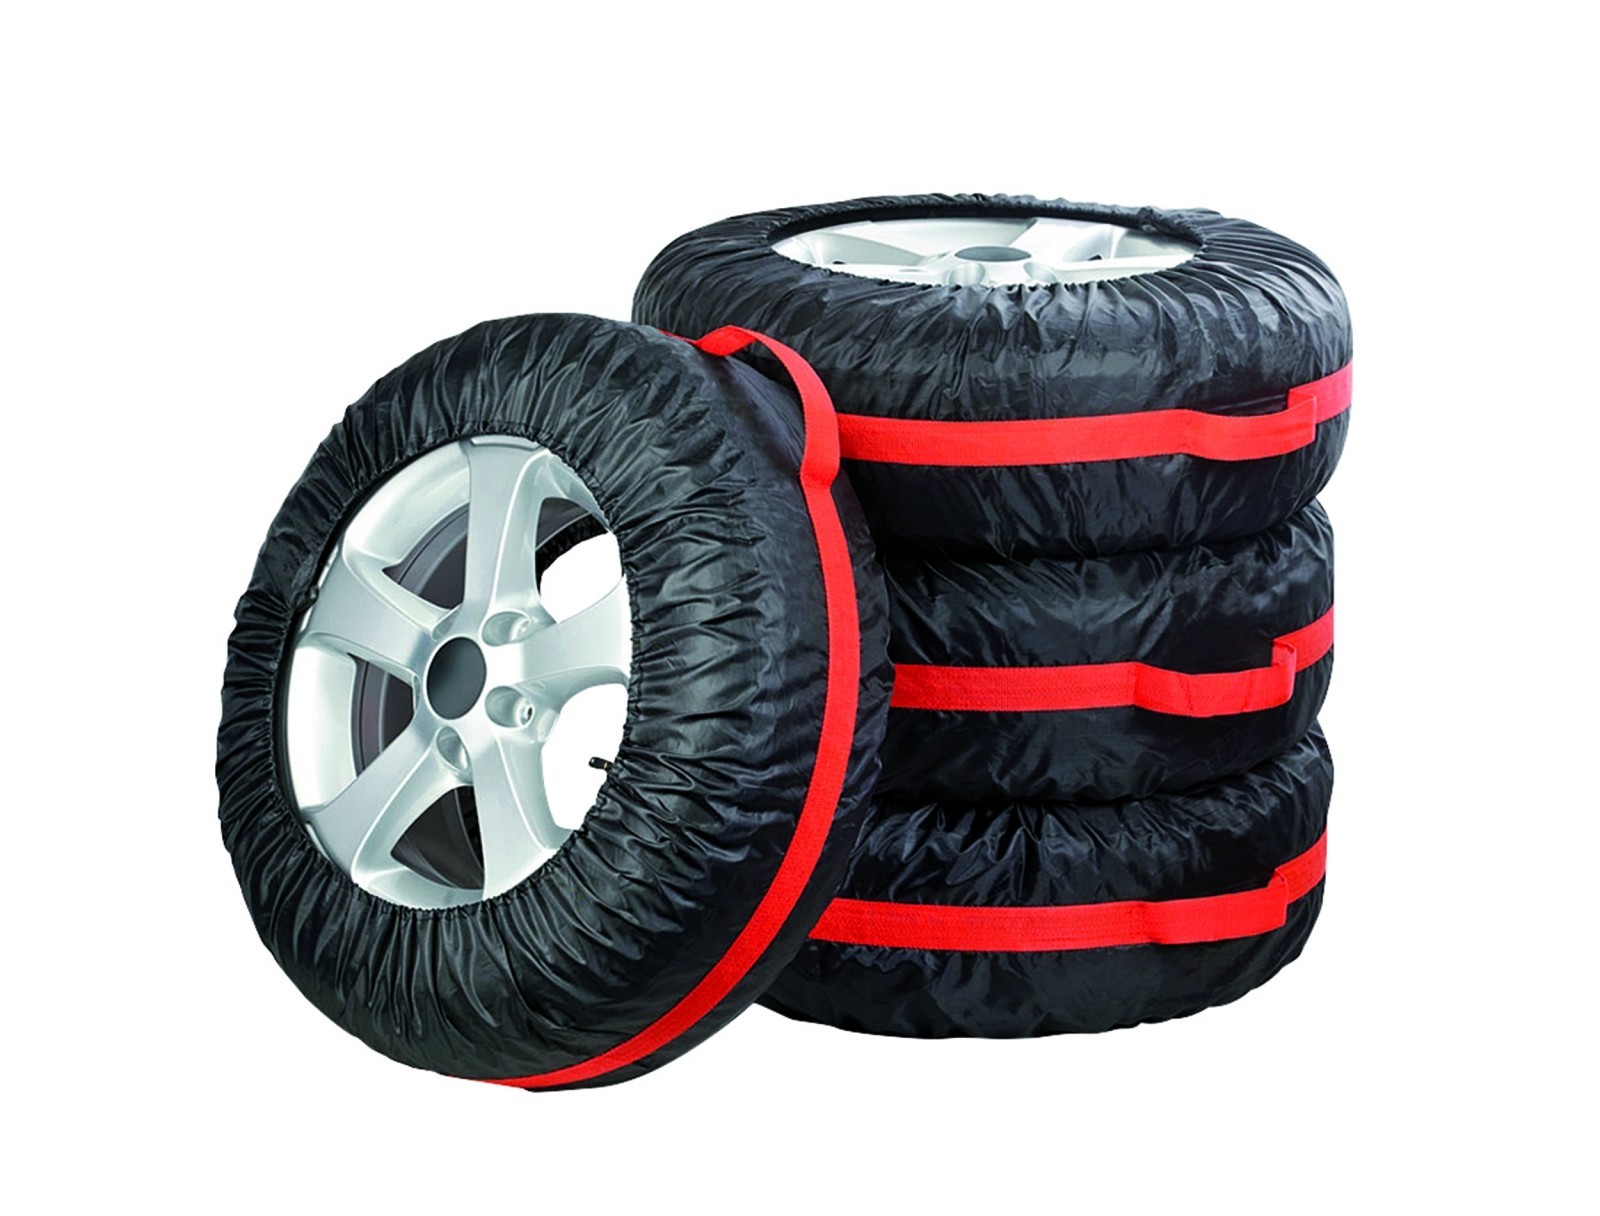 LLZIYAN Auto Reifen Aufbewahrungstasche Mit Reißverschluss Hohe Kapazität Auto Ersatzreifen Outdoor Organizer Tasche 